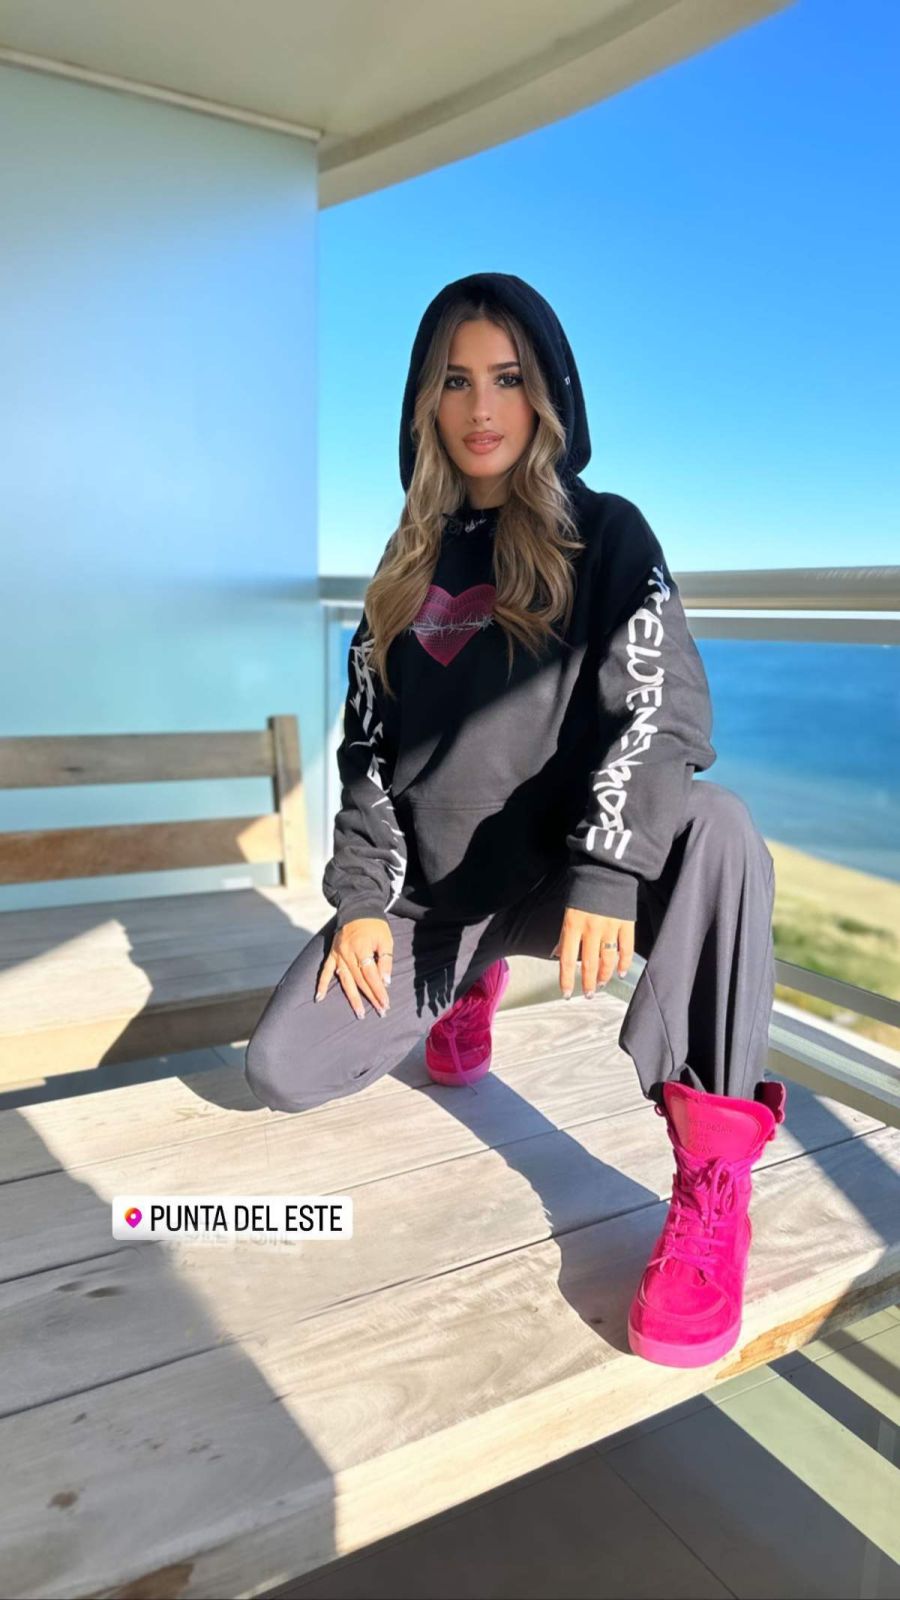 Julieta Poggio arribó a Punta del Este y presentó sus looks cancherísimos: “Buen día”